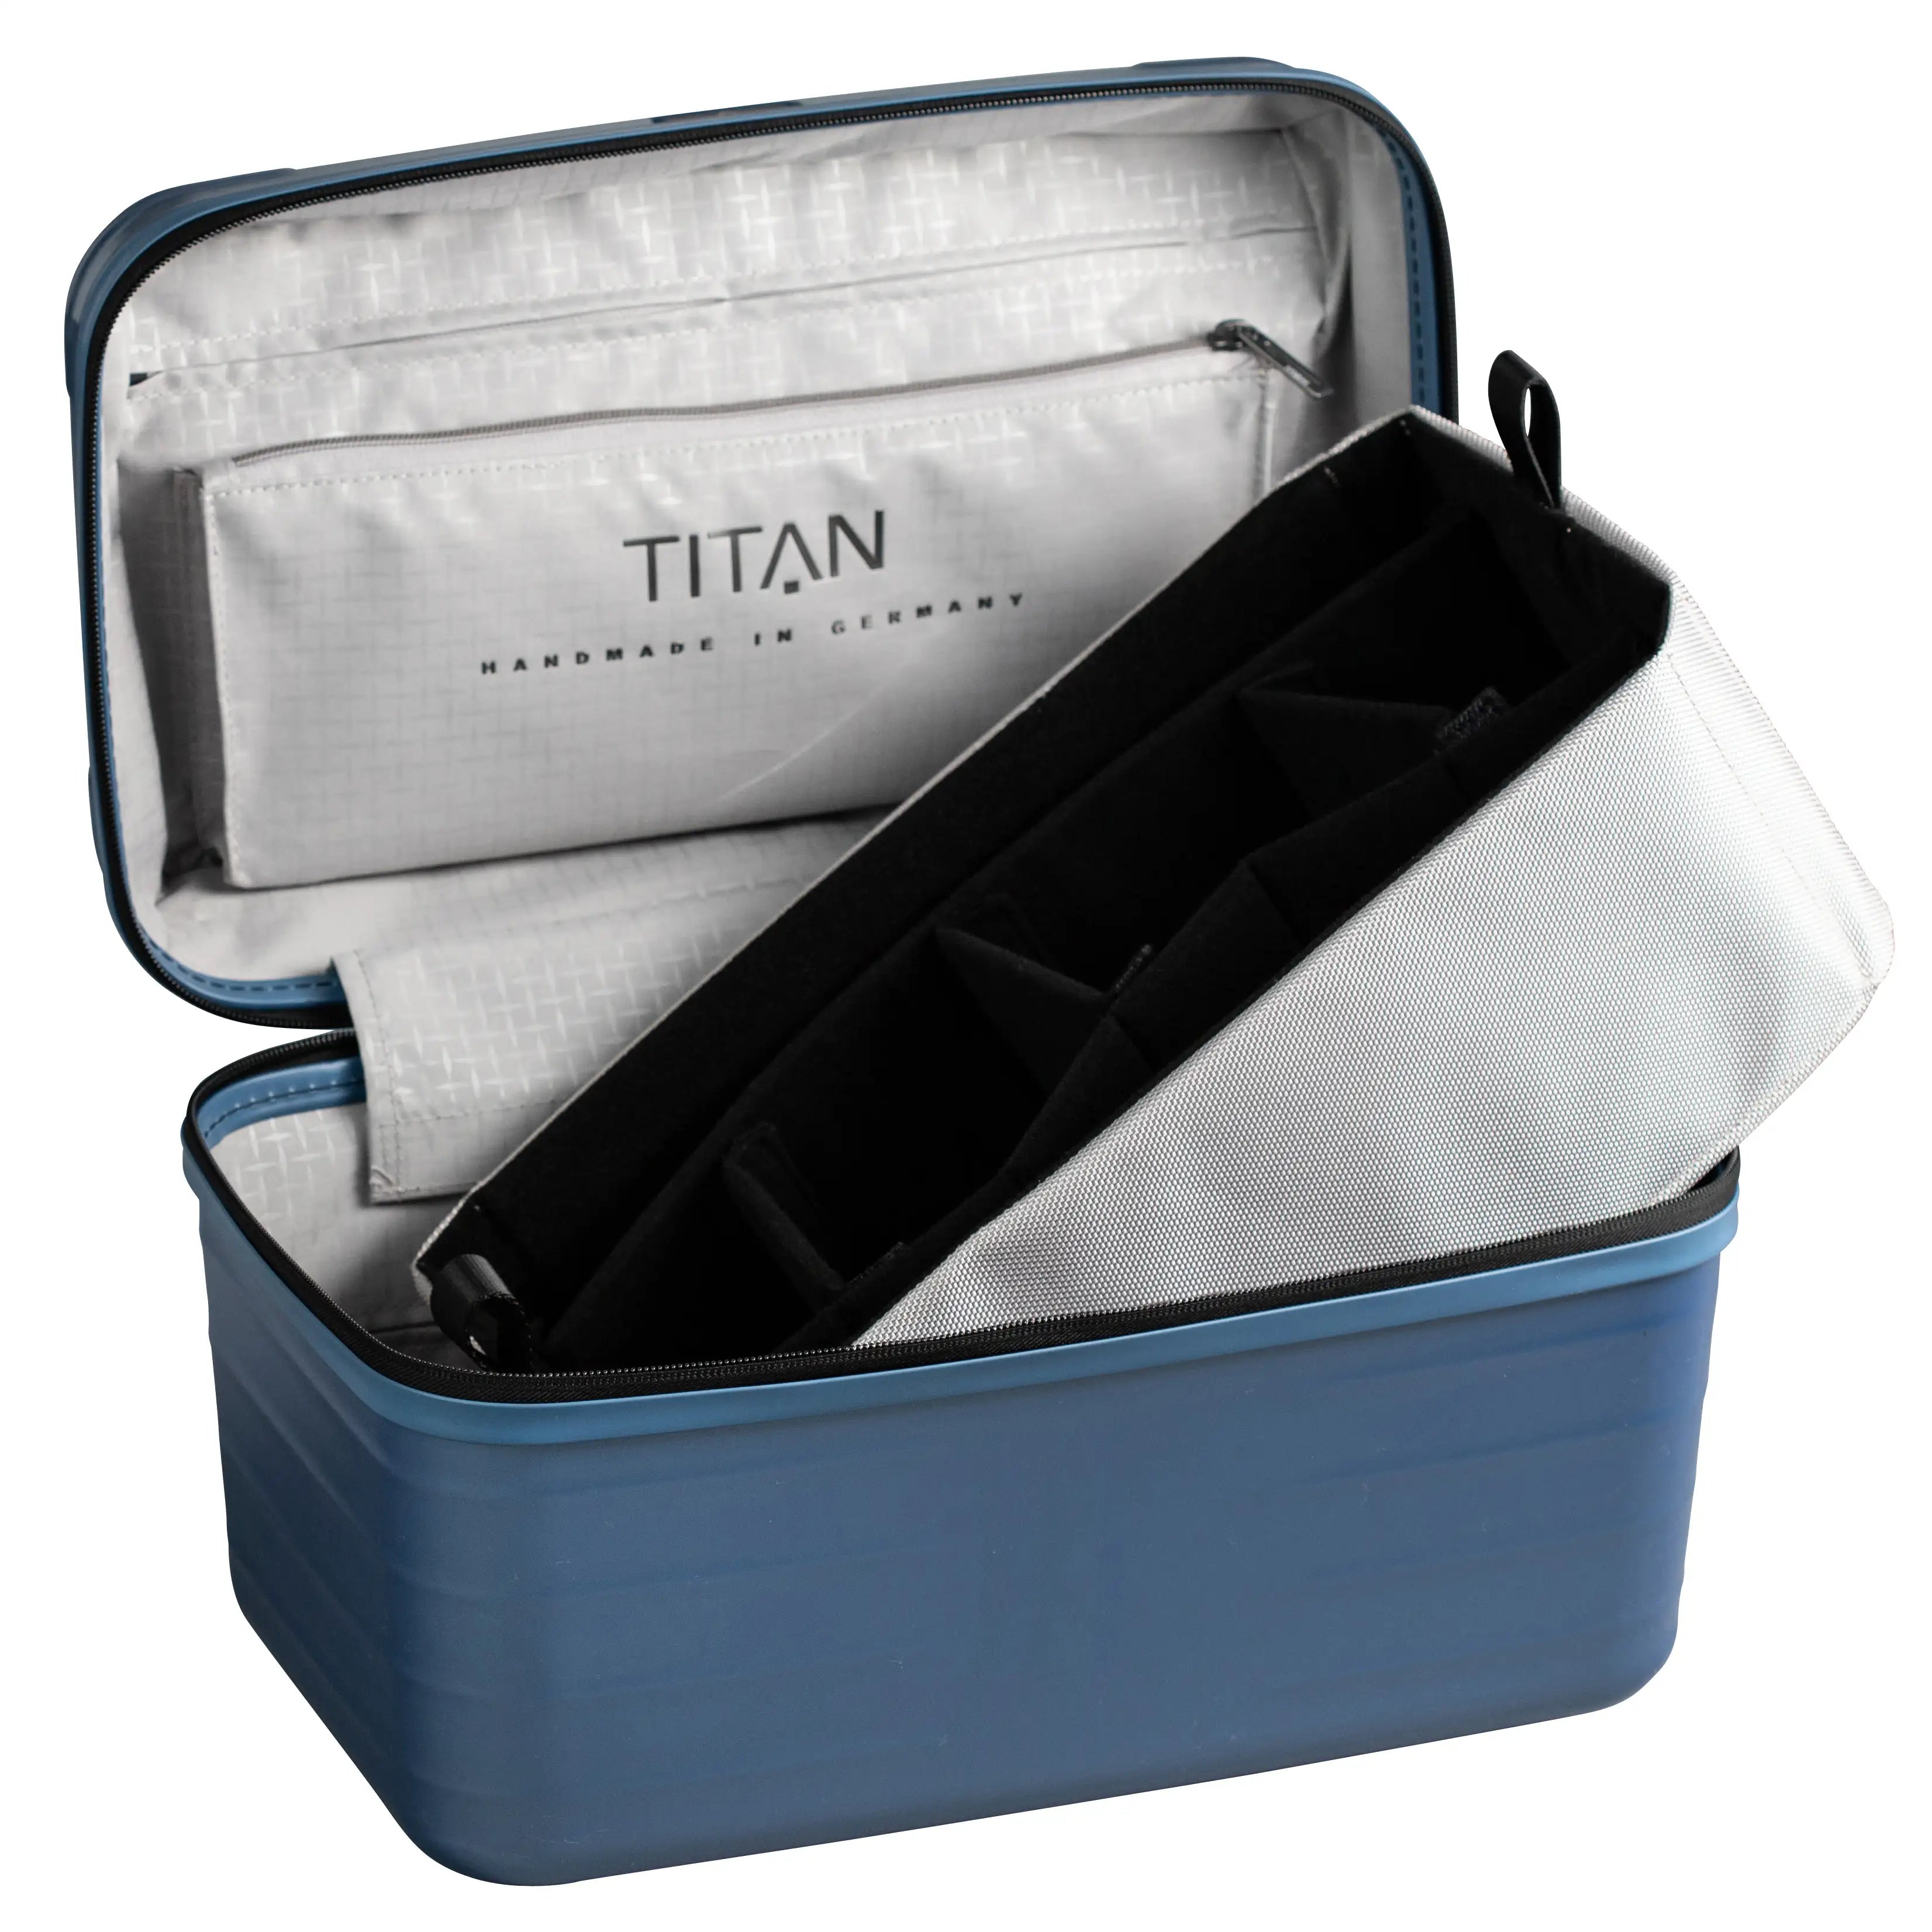 Titan Litron Beautycase - Ice blue